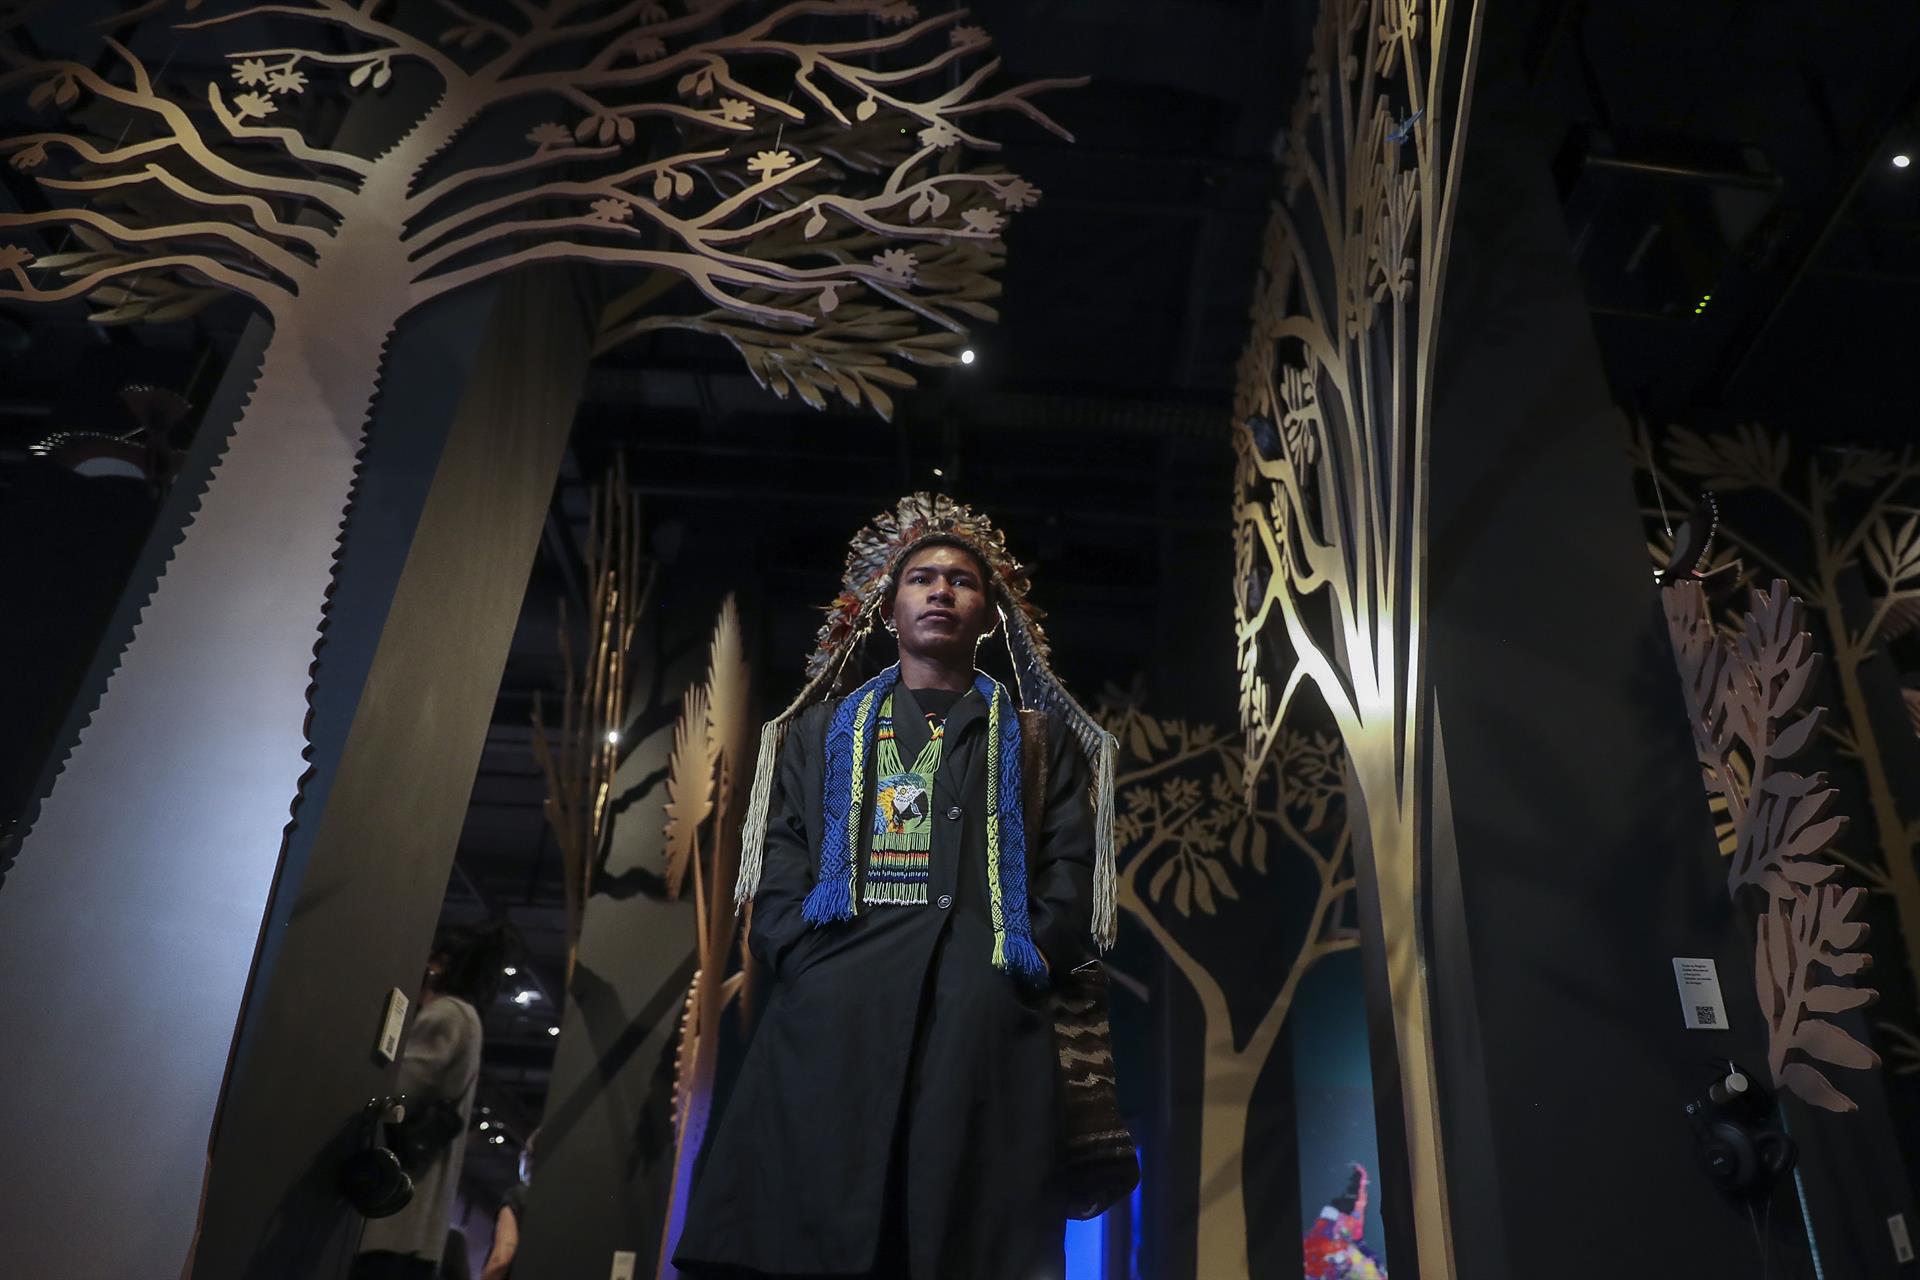 El indígena Álvaro Cesar de la etnia Yepá-Mahsã participa en la muestra "Nhe'e Pora: Memoria y Transformación", el 11 de octubre de 2022, en el Museo de la Lengua Portuguesa en Sao Paulo (Brasil). EFE/Sebastiao Moreira